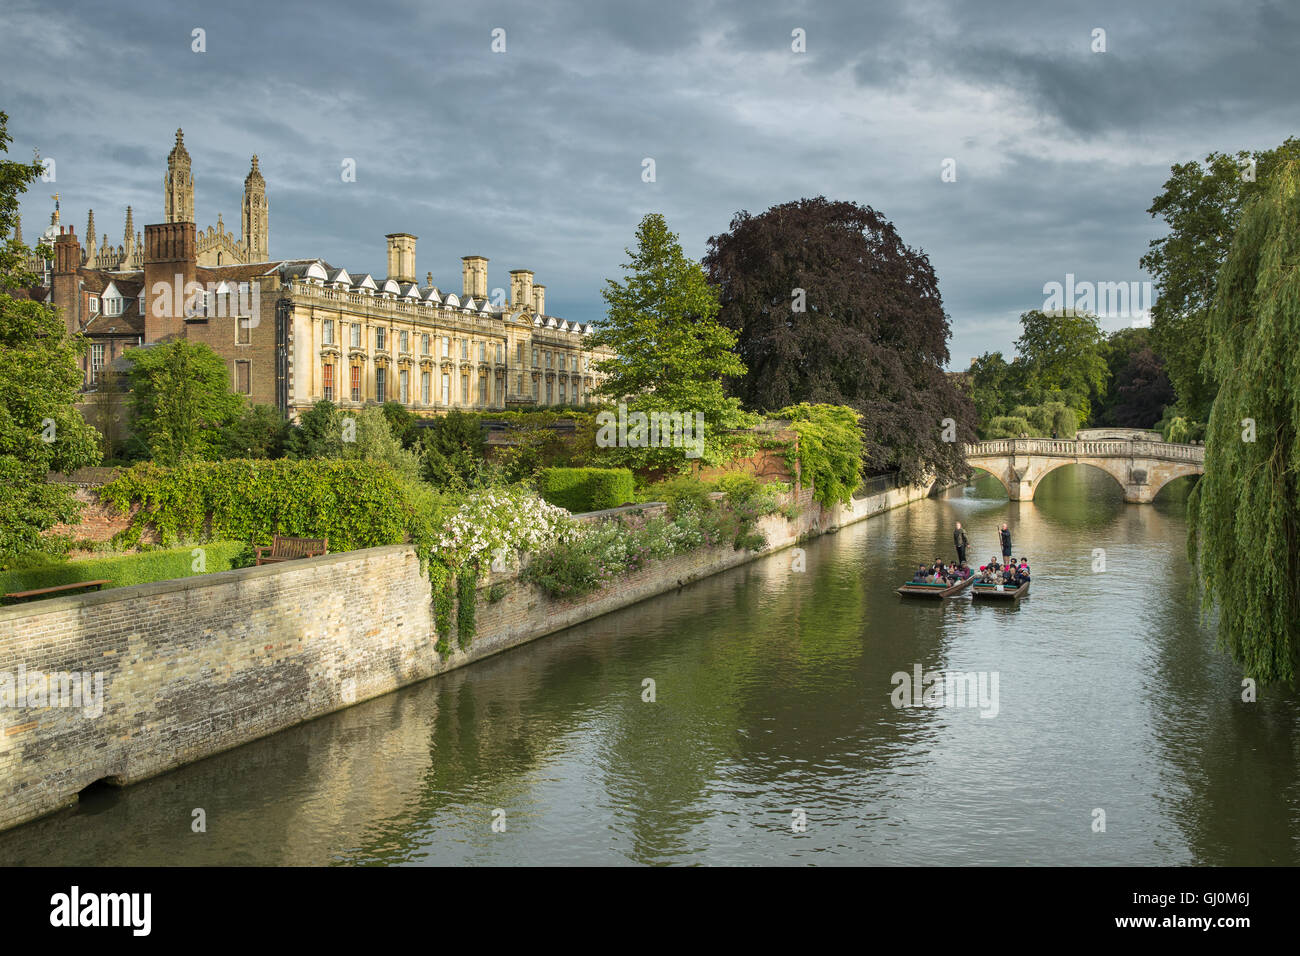 Los apostadores en el río Cam pass Clare College, Cambridge, Inglaterra. Foto de stock